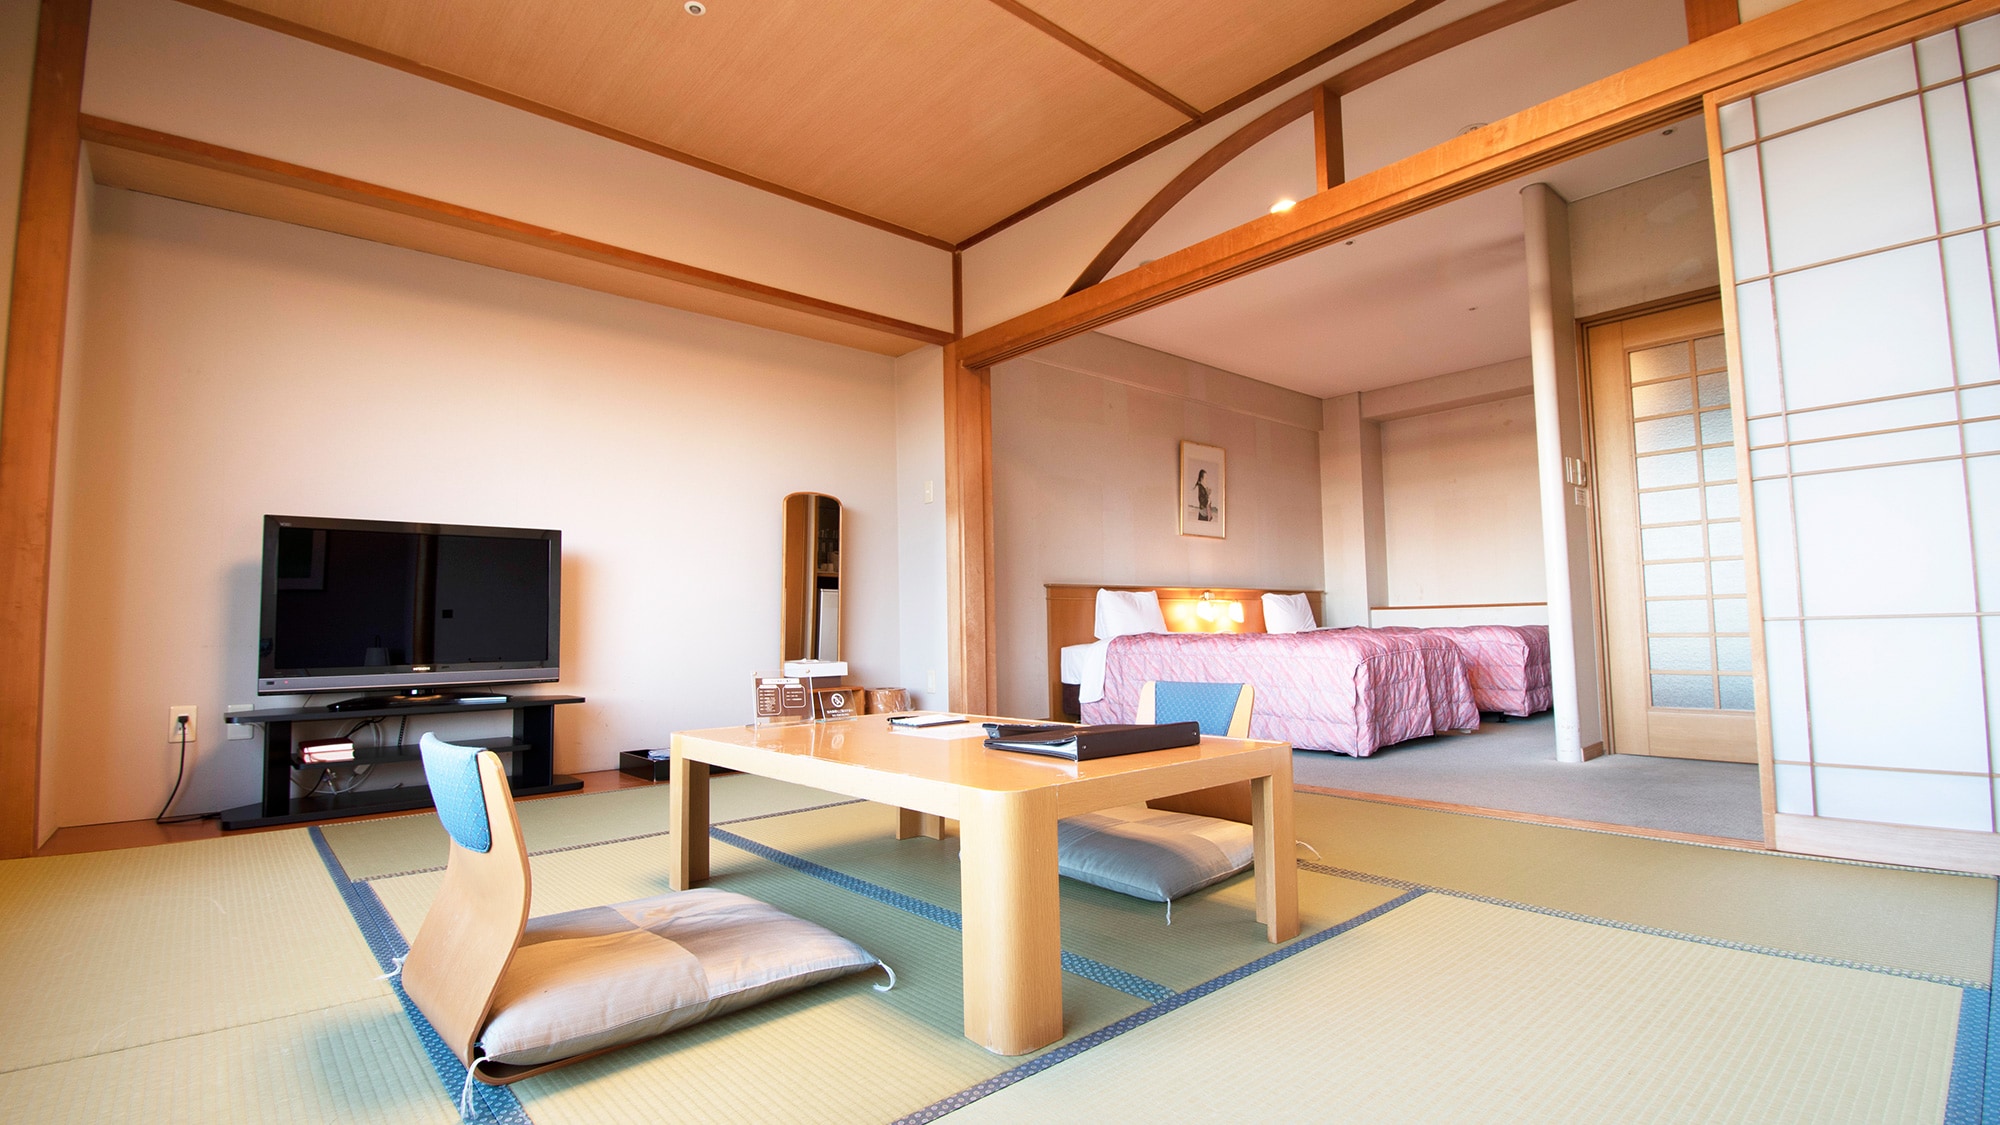 ◆ ห้องญี่ปุ่นและตะวันตก [ปีกเหนือ] 52.3 ตารางเมตร